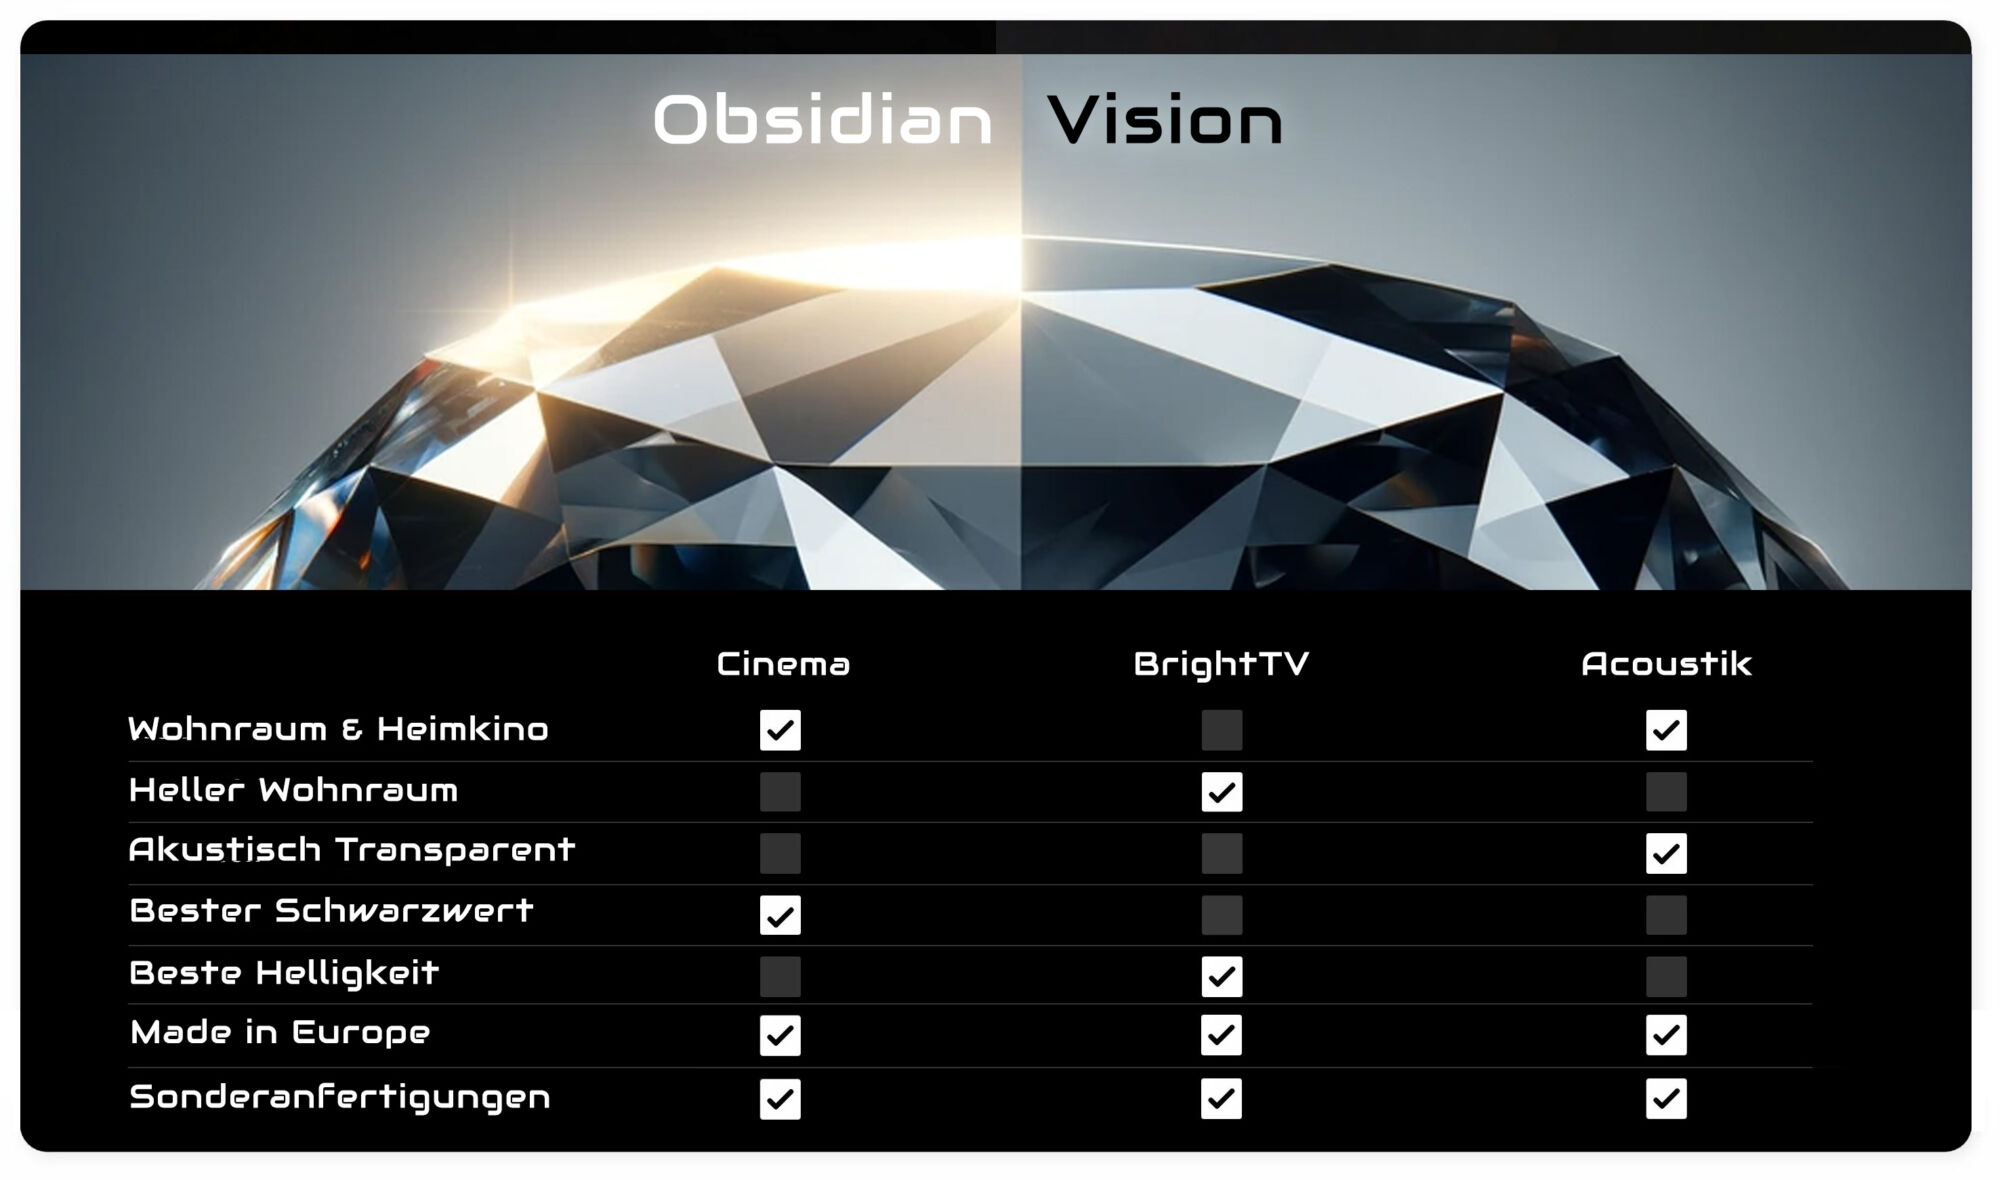 Obsidian Vision Familie